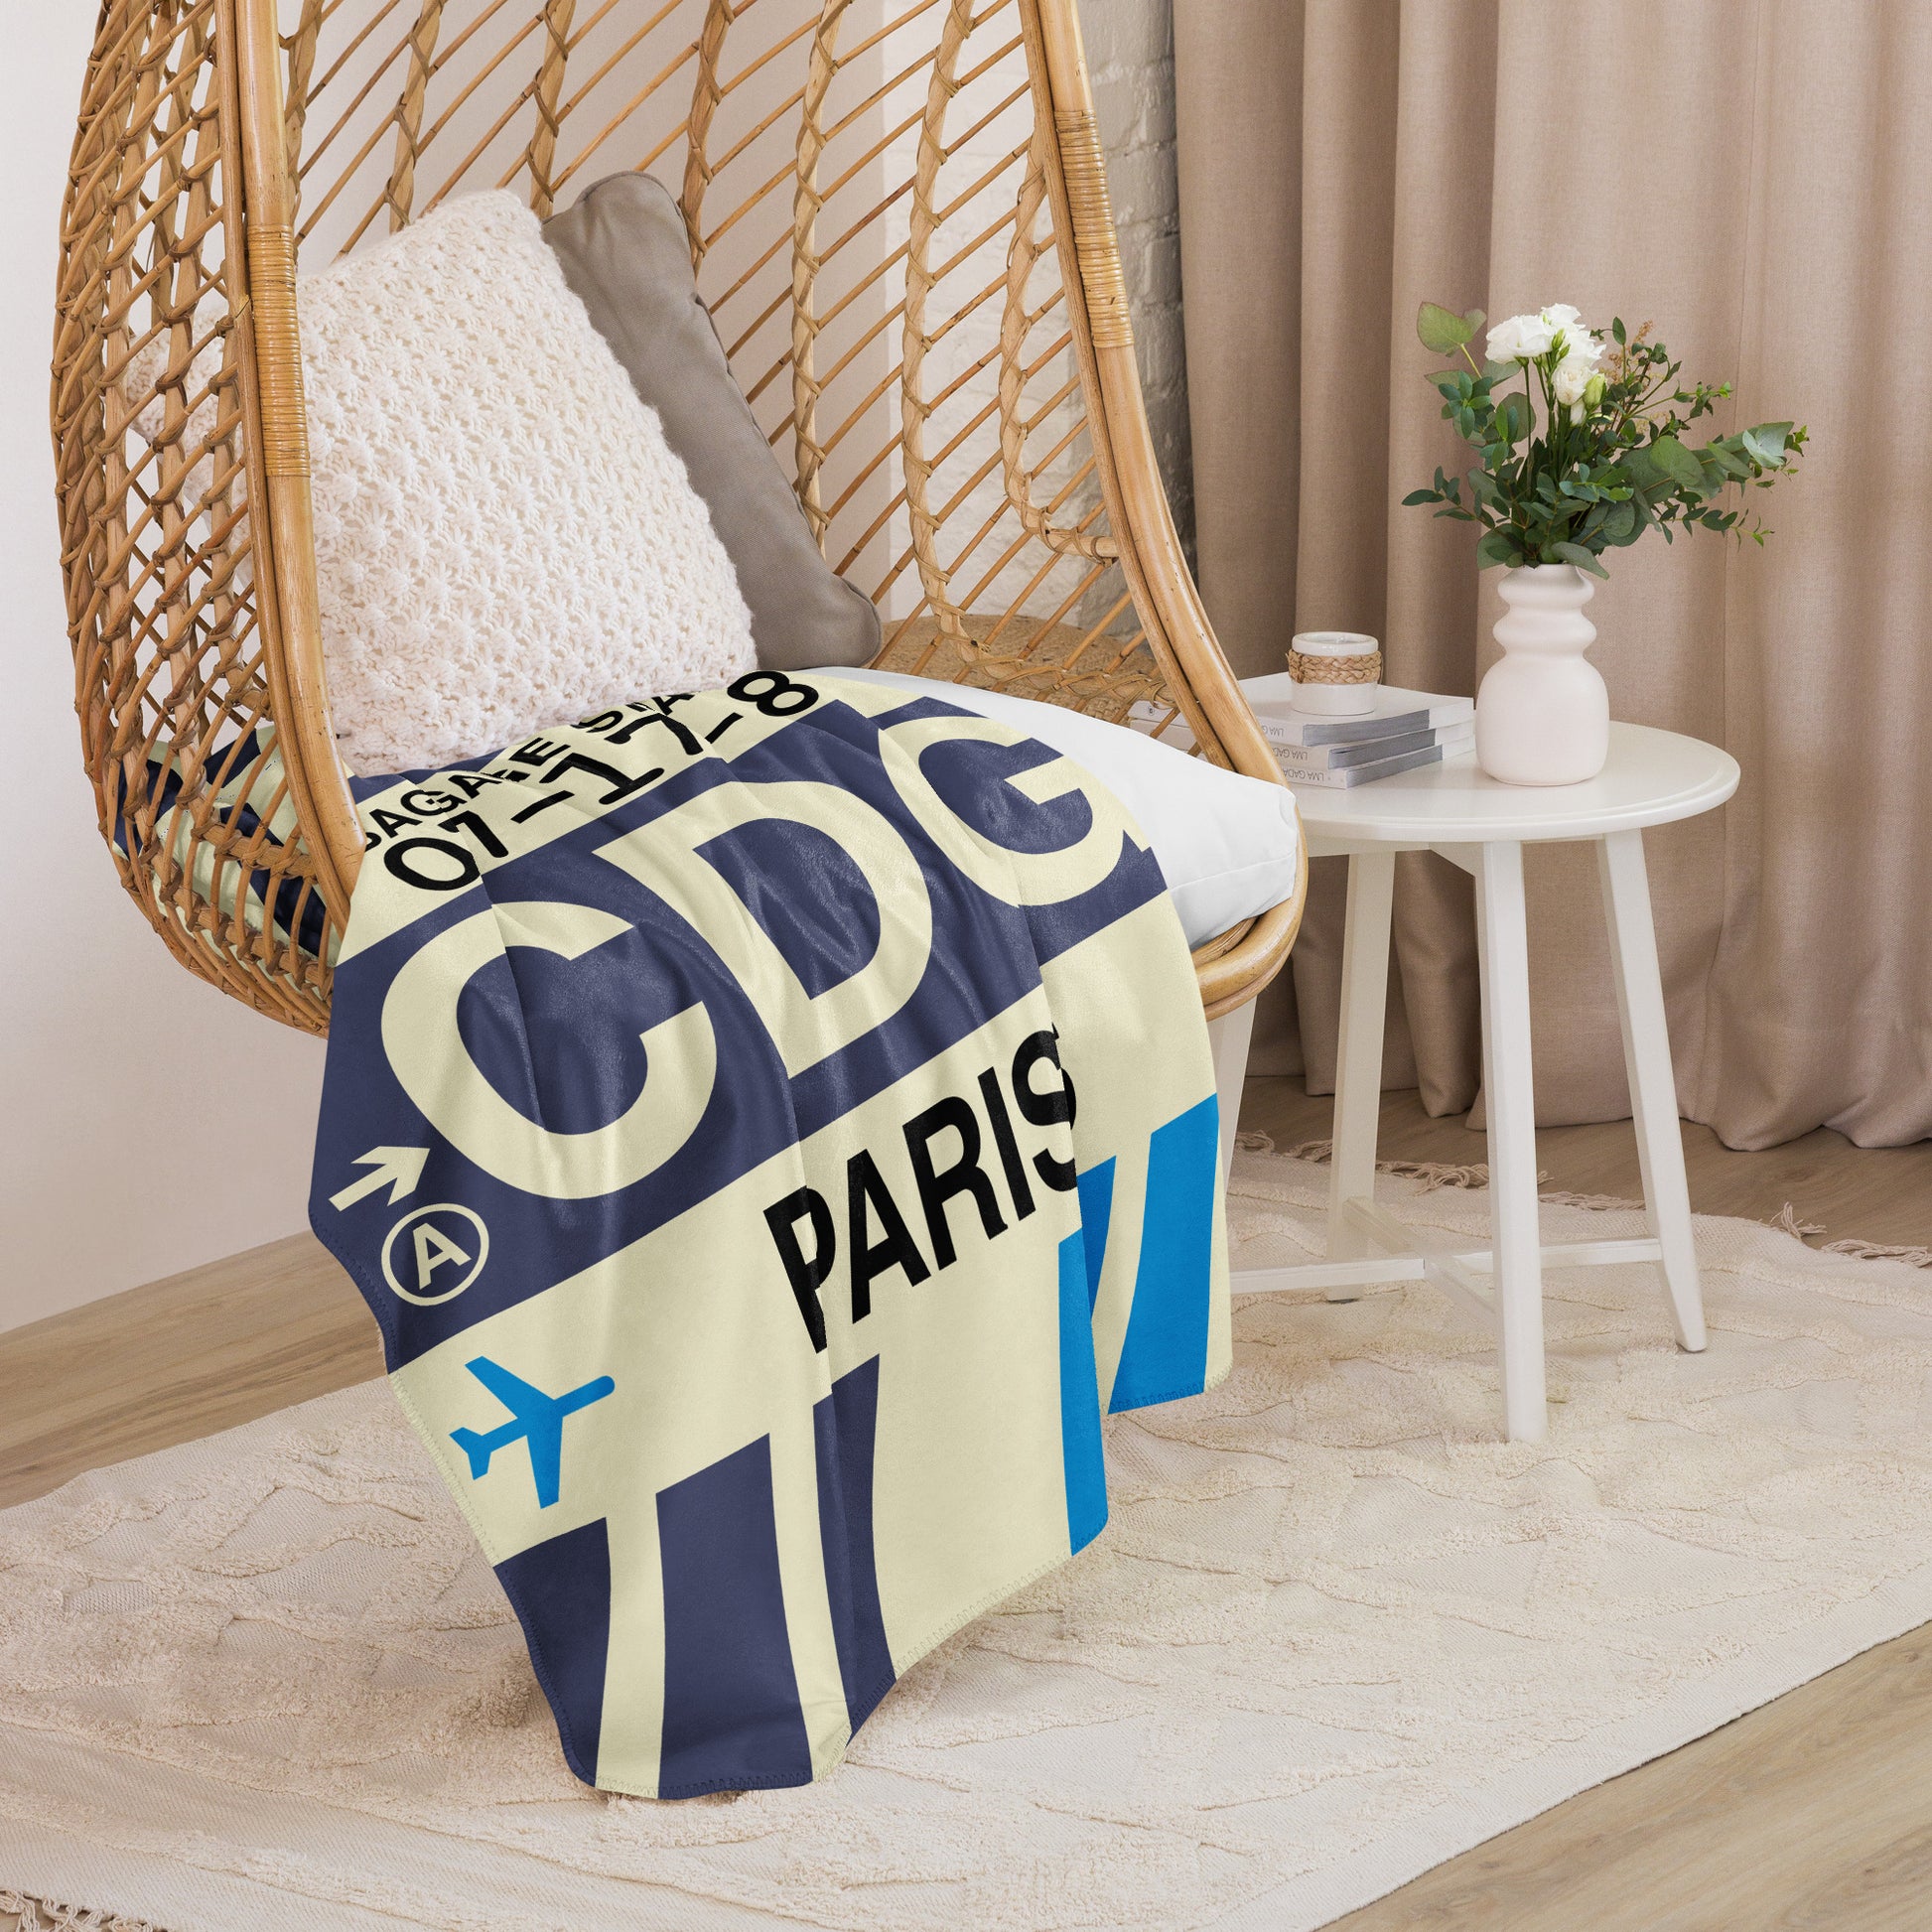 Travel Gift Sherpa Blanket • CDG Paris • YHM Designs - Image 07